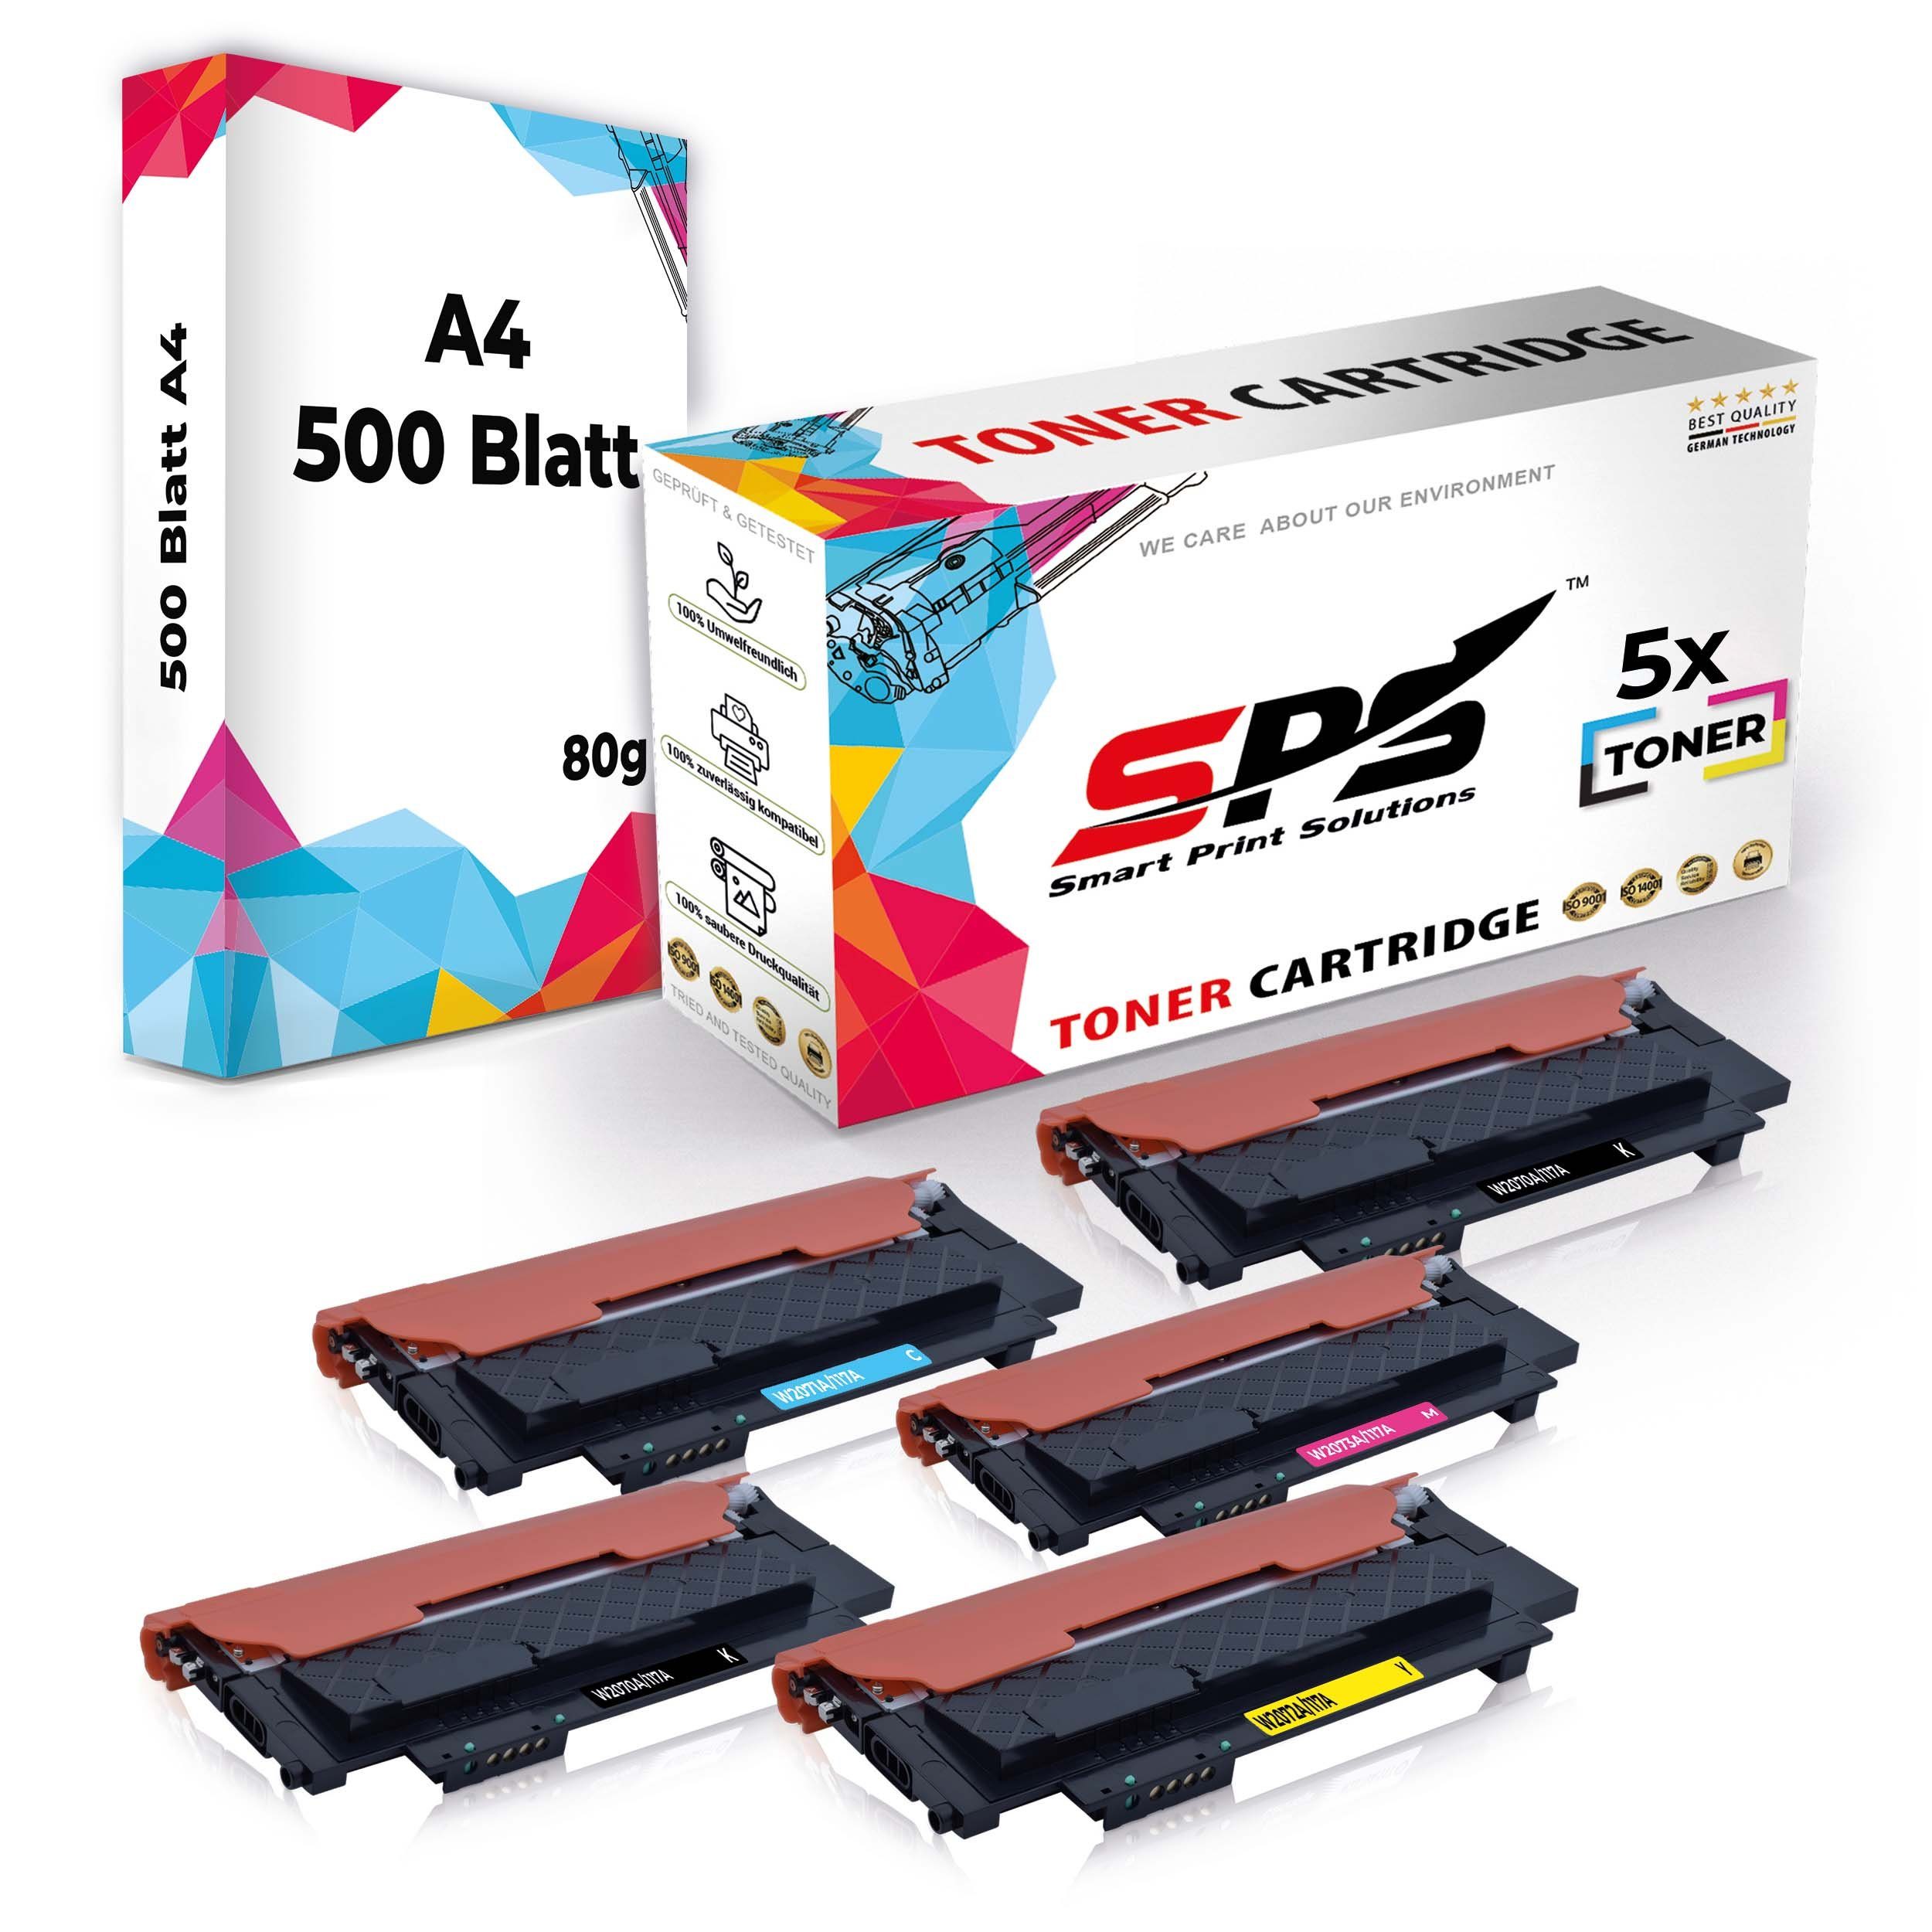 Multipack SPS Druckerpapier 5x Toner,1x A4 Tonerkartusche + Set Kompatibel, Pack, (6er A4 Druckerpapier) 5x